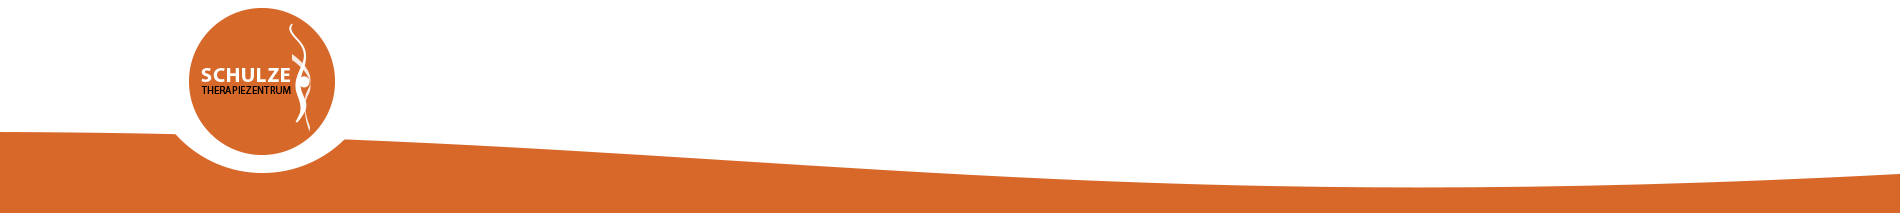 Welle mit Logo